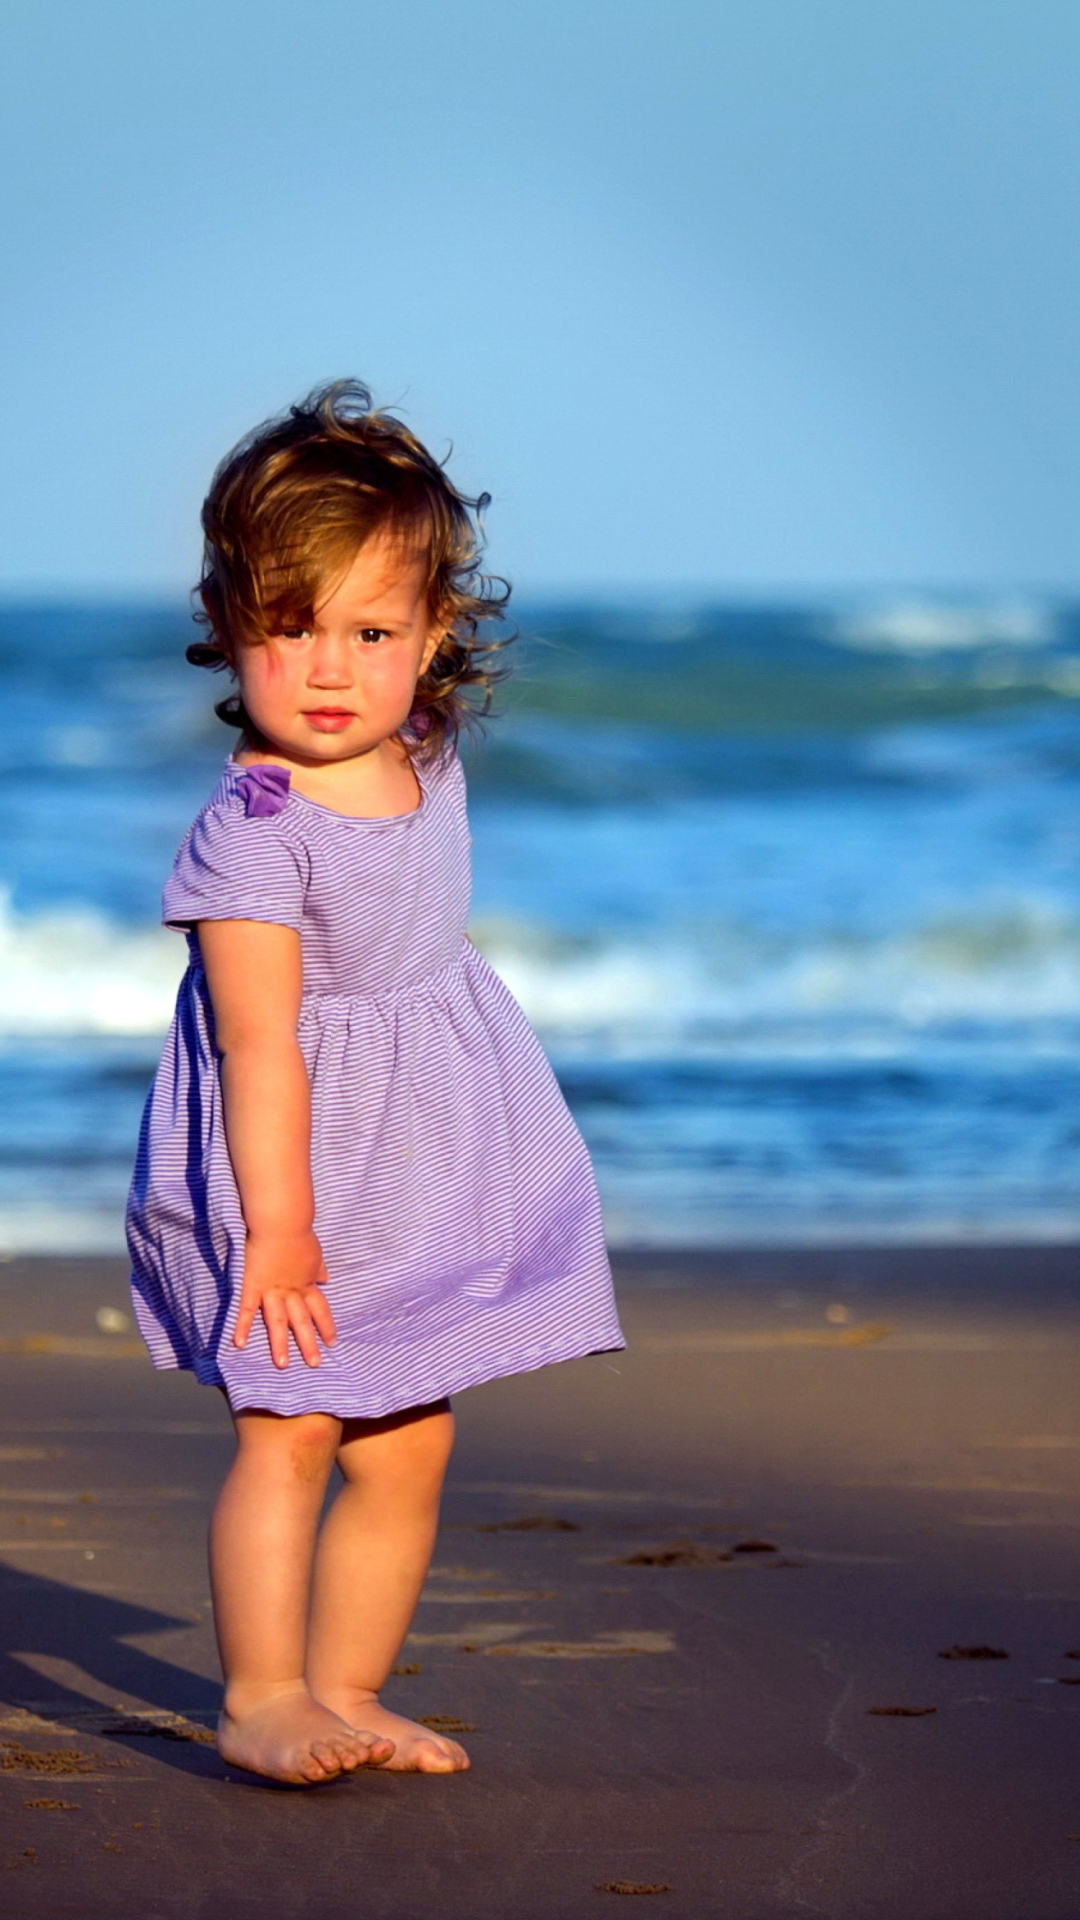 Little Girl On Beach wallpaper 1080x1920